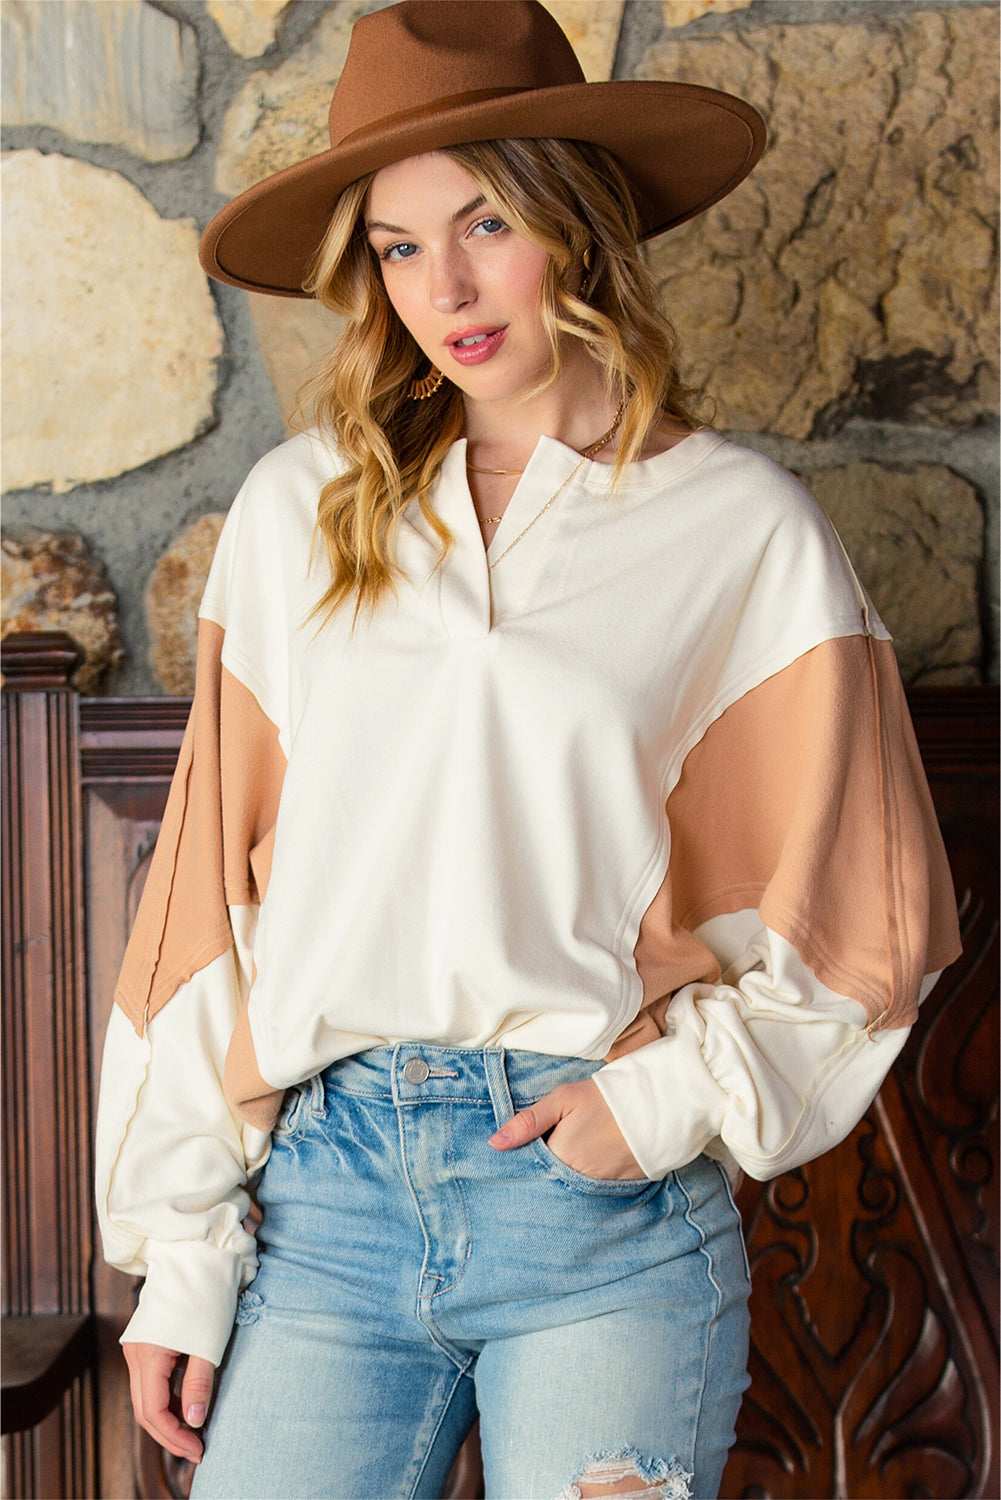 Smeđa vrećasta majica s razdvojenim ovratnikom u obliku patchwork boje